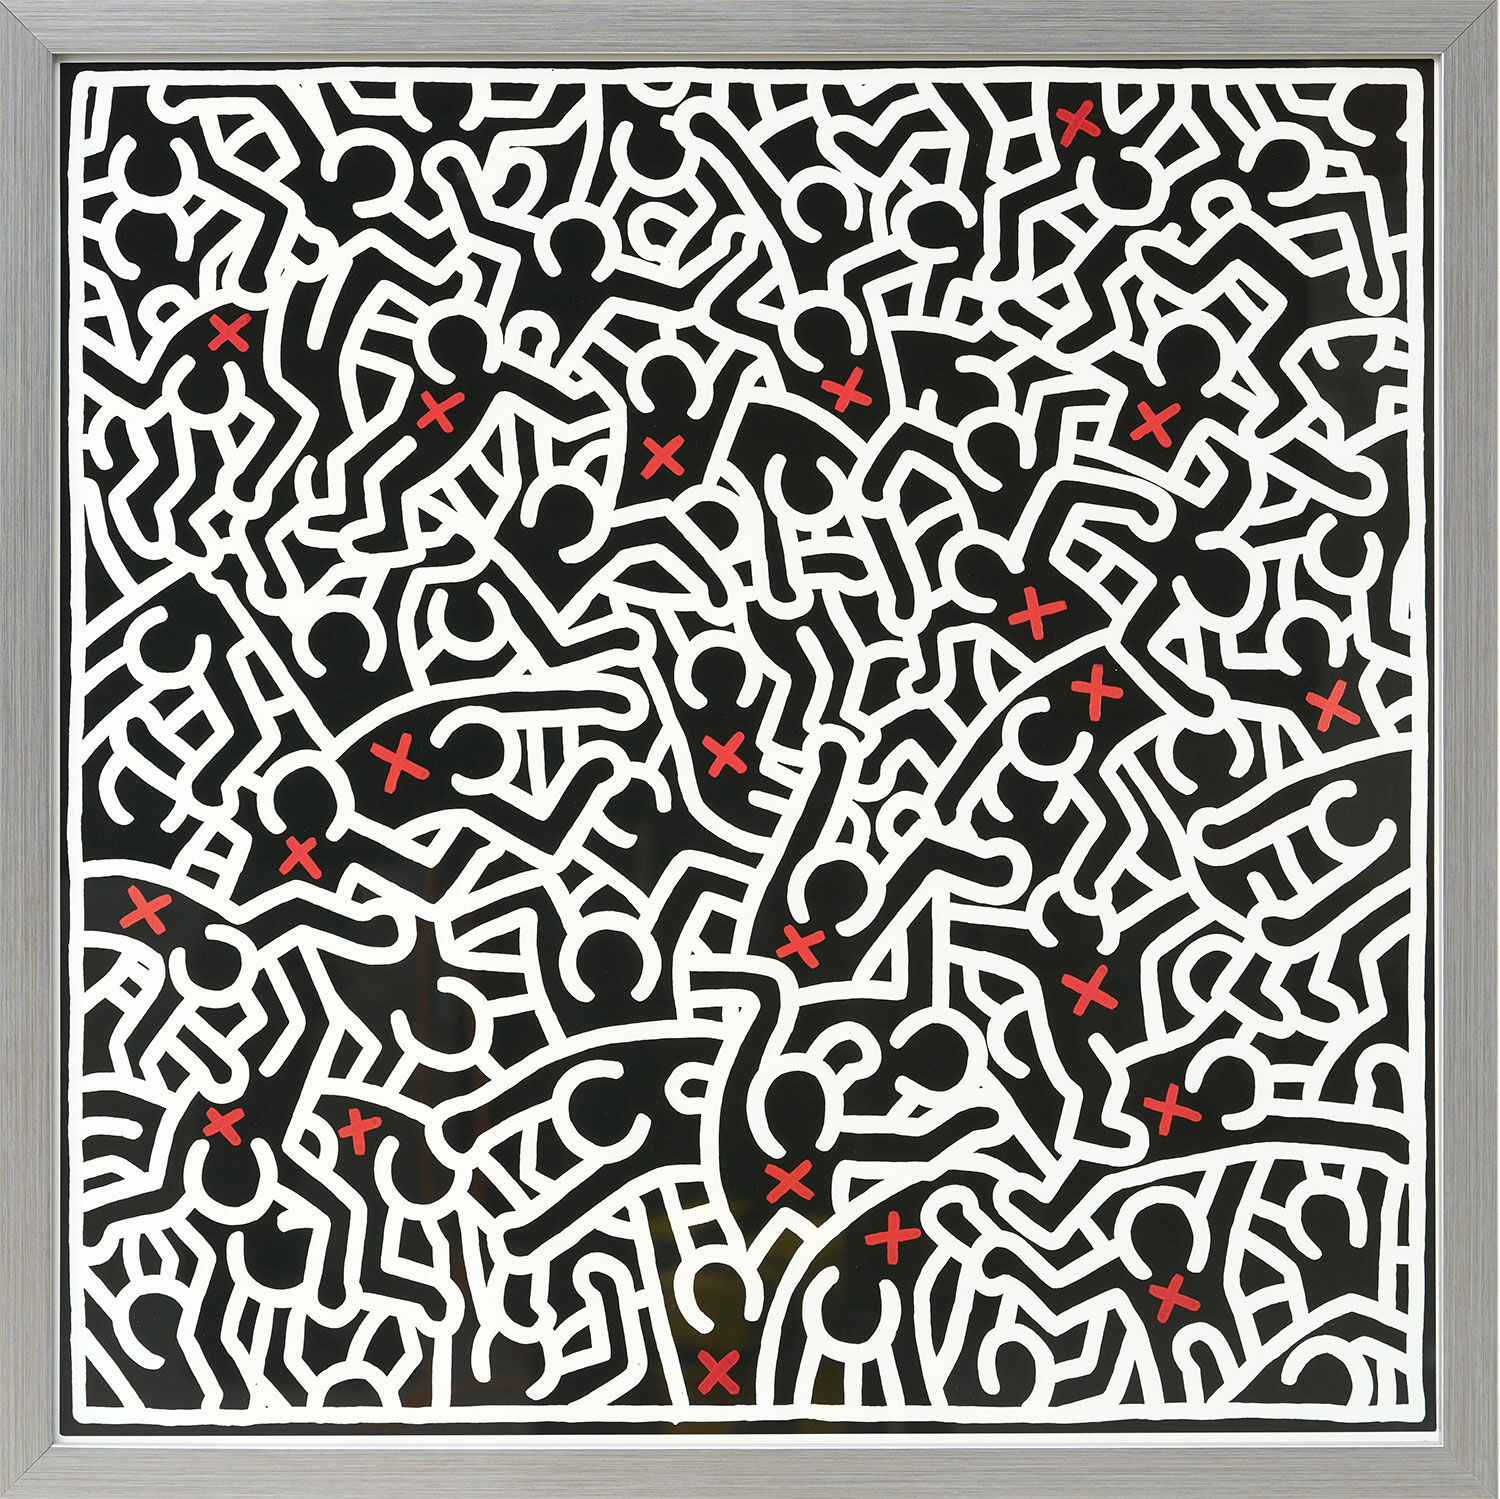 Bild "Untitled, April" (1985), gerahmt von Keith Haring